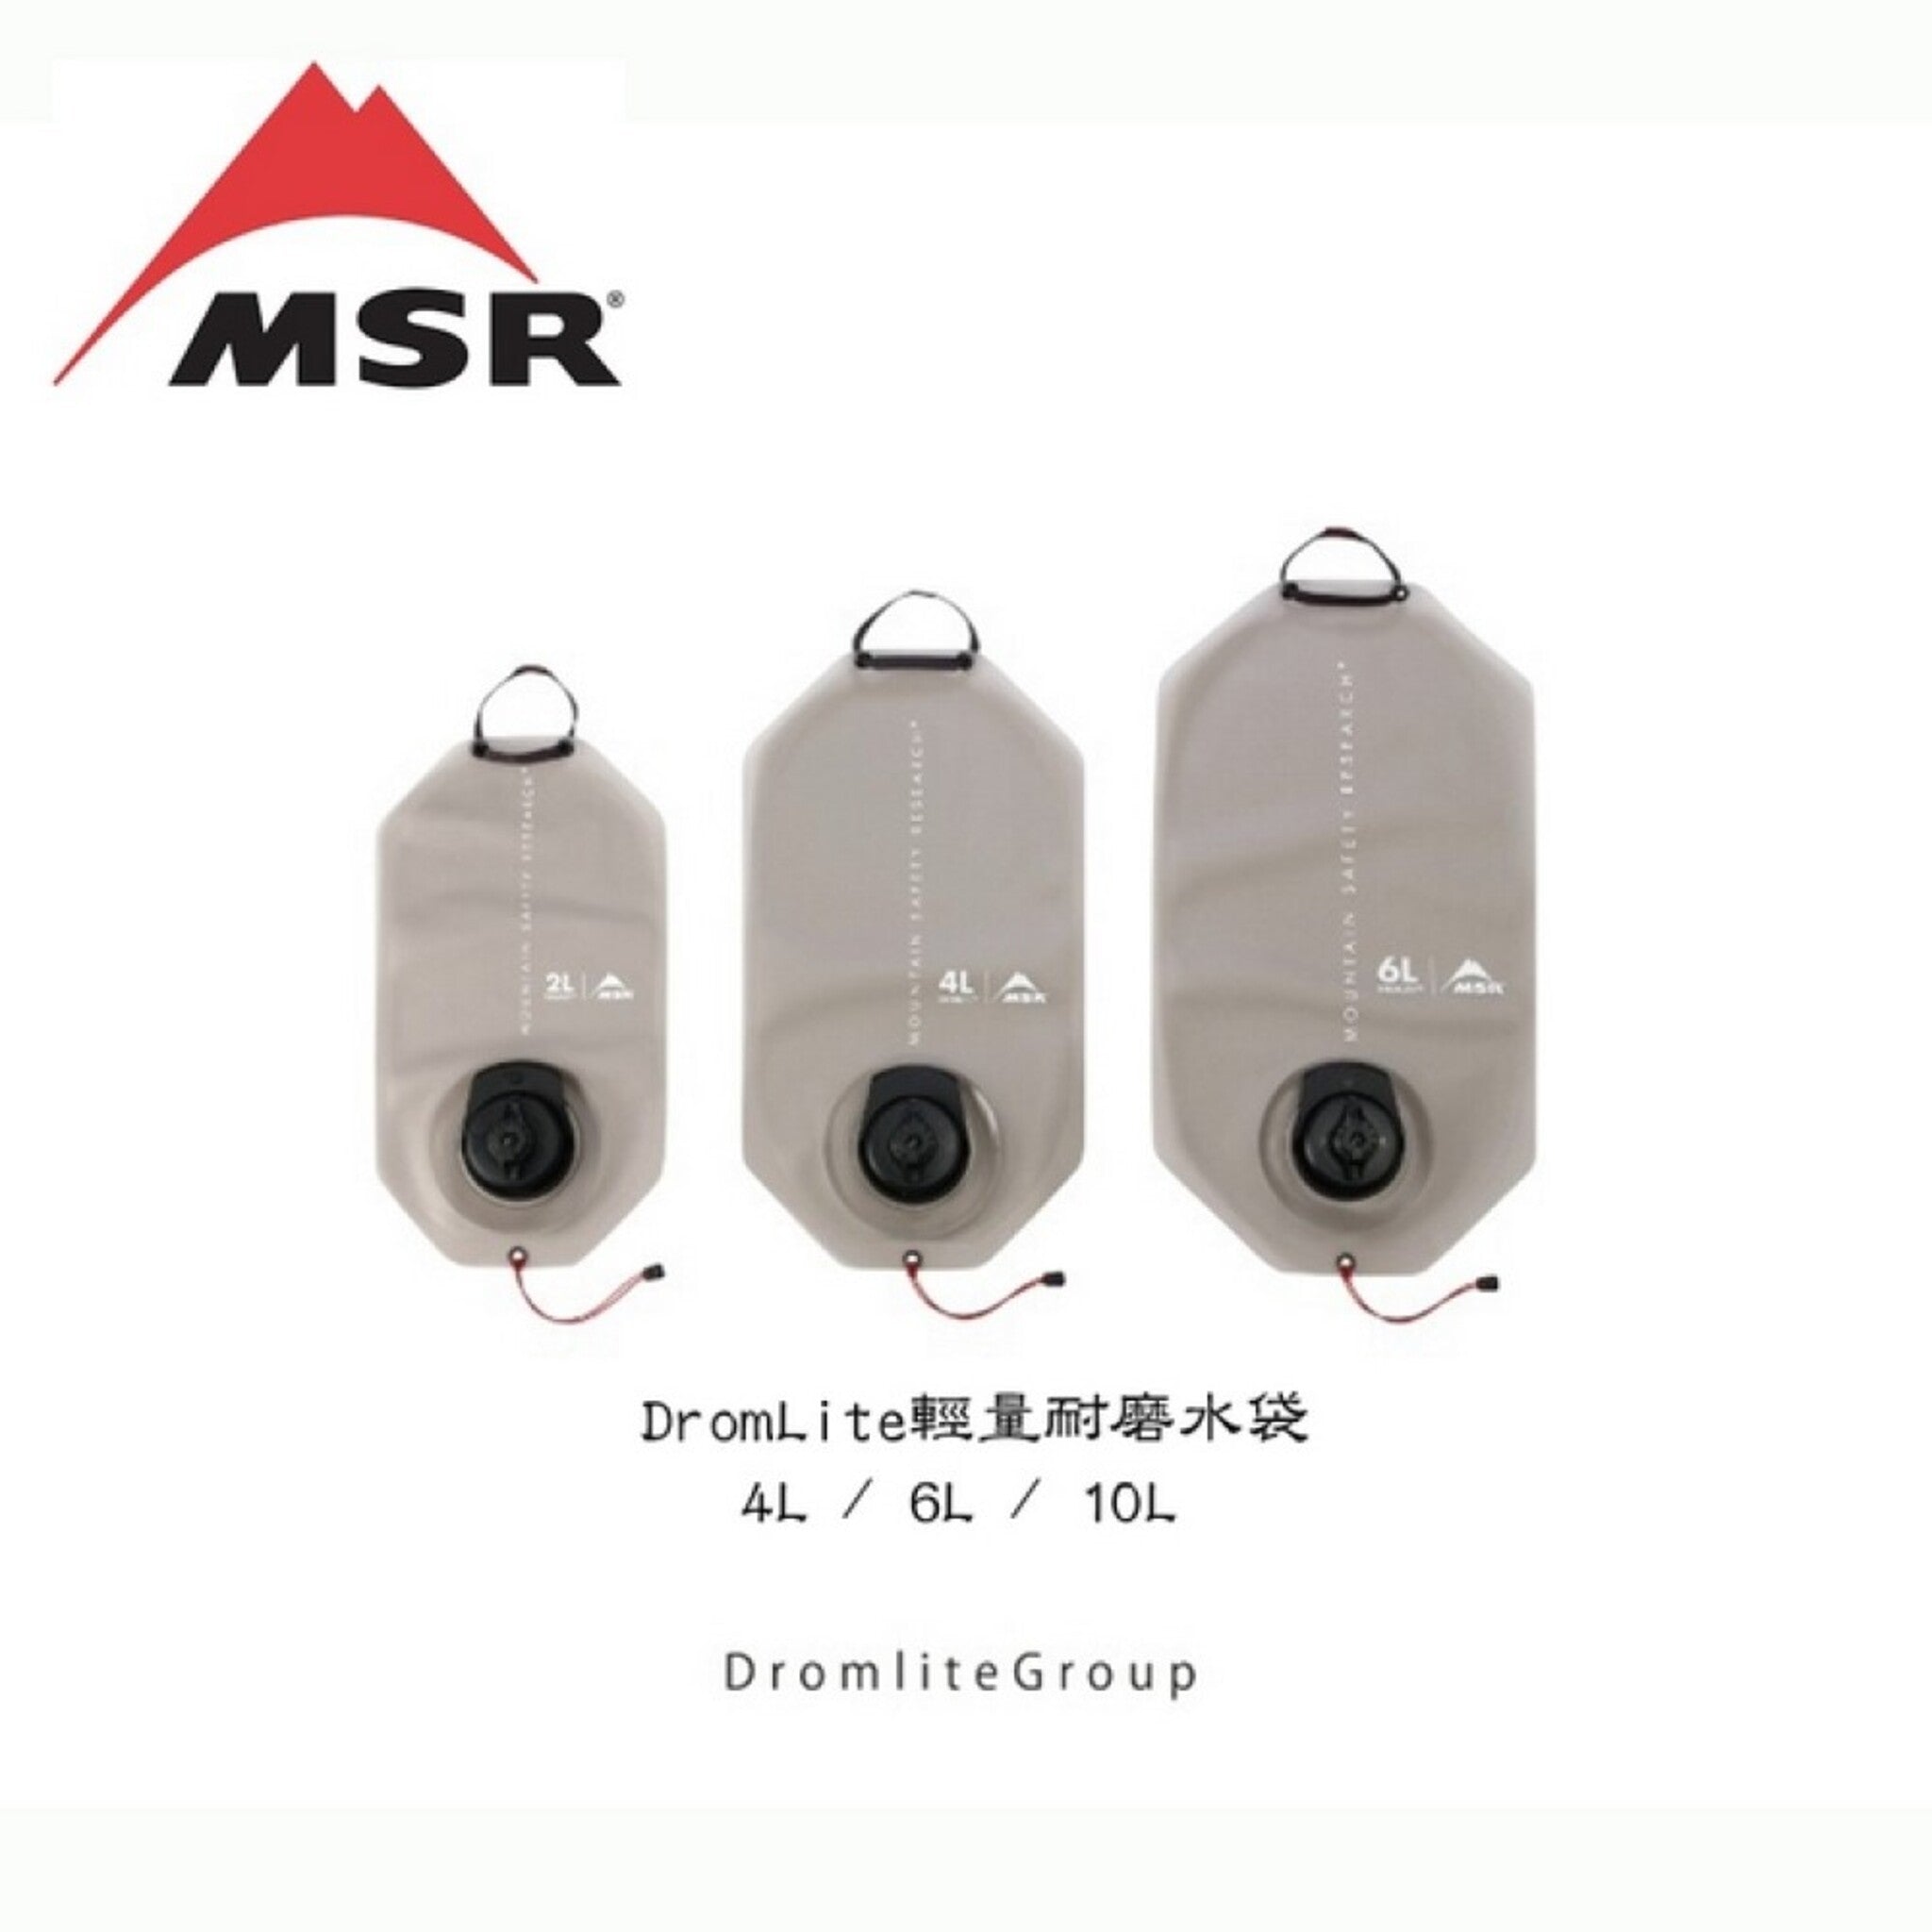 MSR DromLite輕量耐磨水袋 2L / 4L / 6L 09583/09584/09585